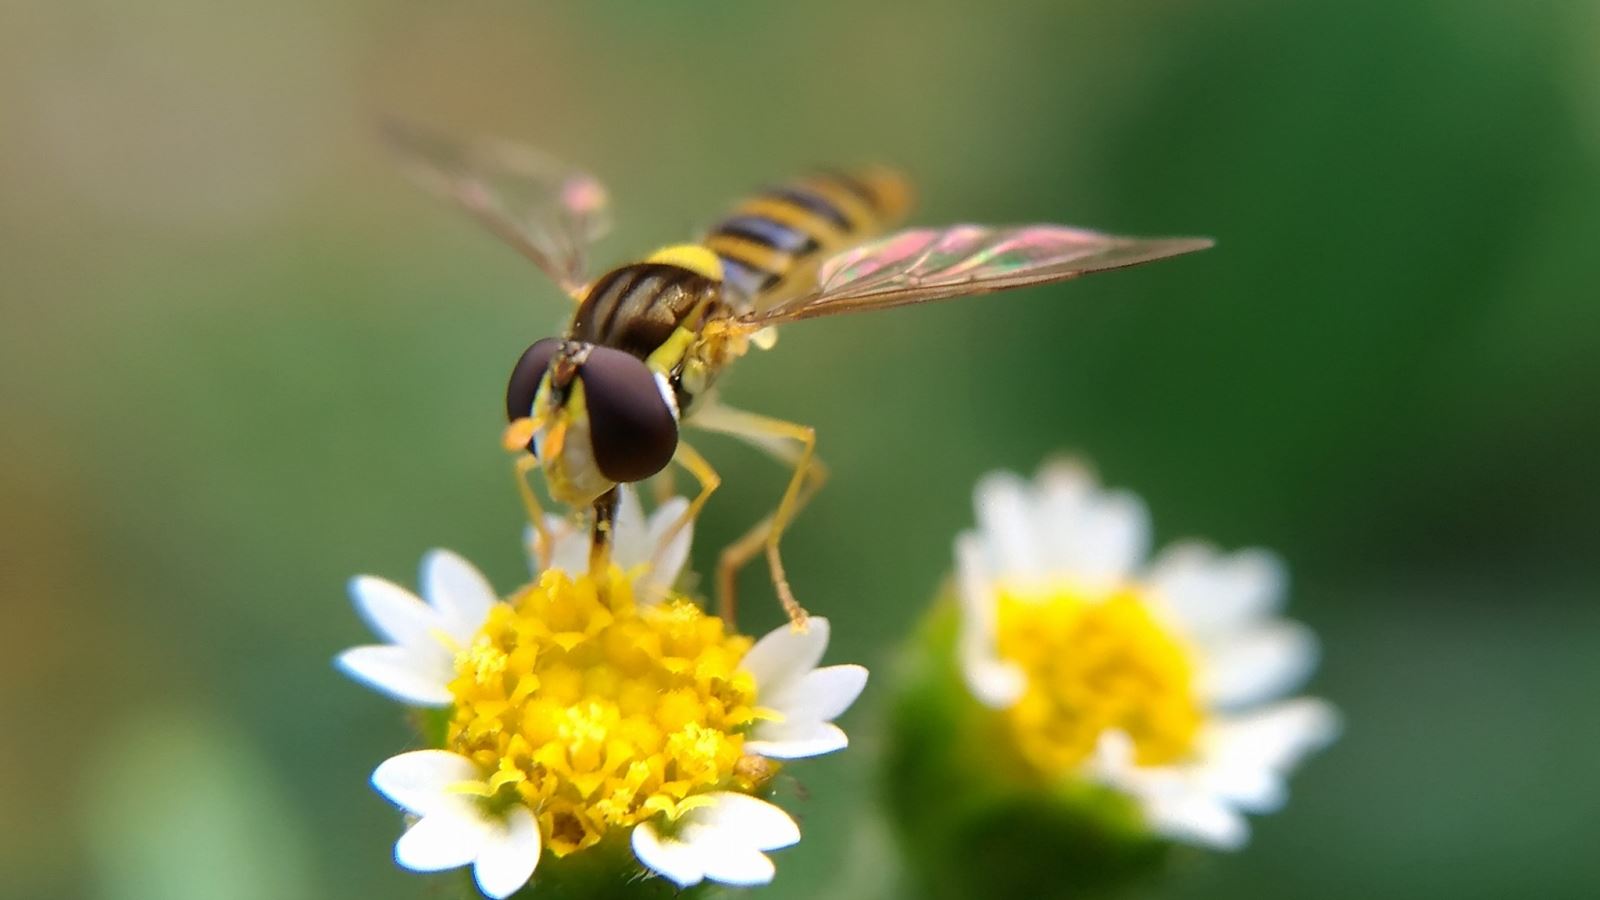 Tổng-hợp-hình-ảnh-về-các-loài-ong-đẹp-53.jpeg